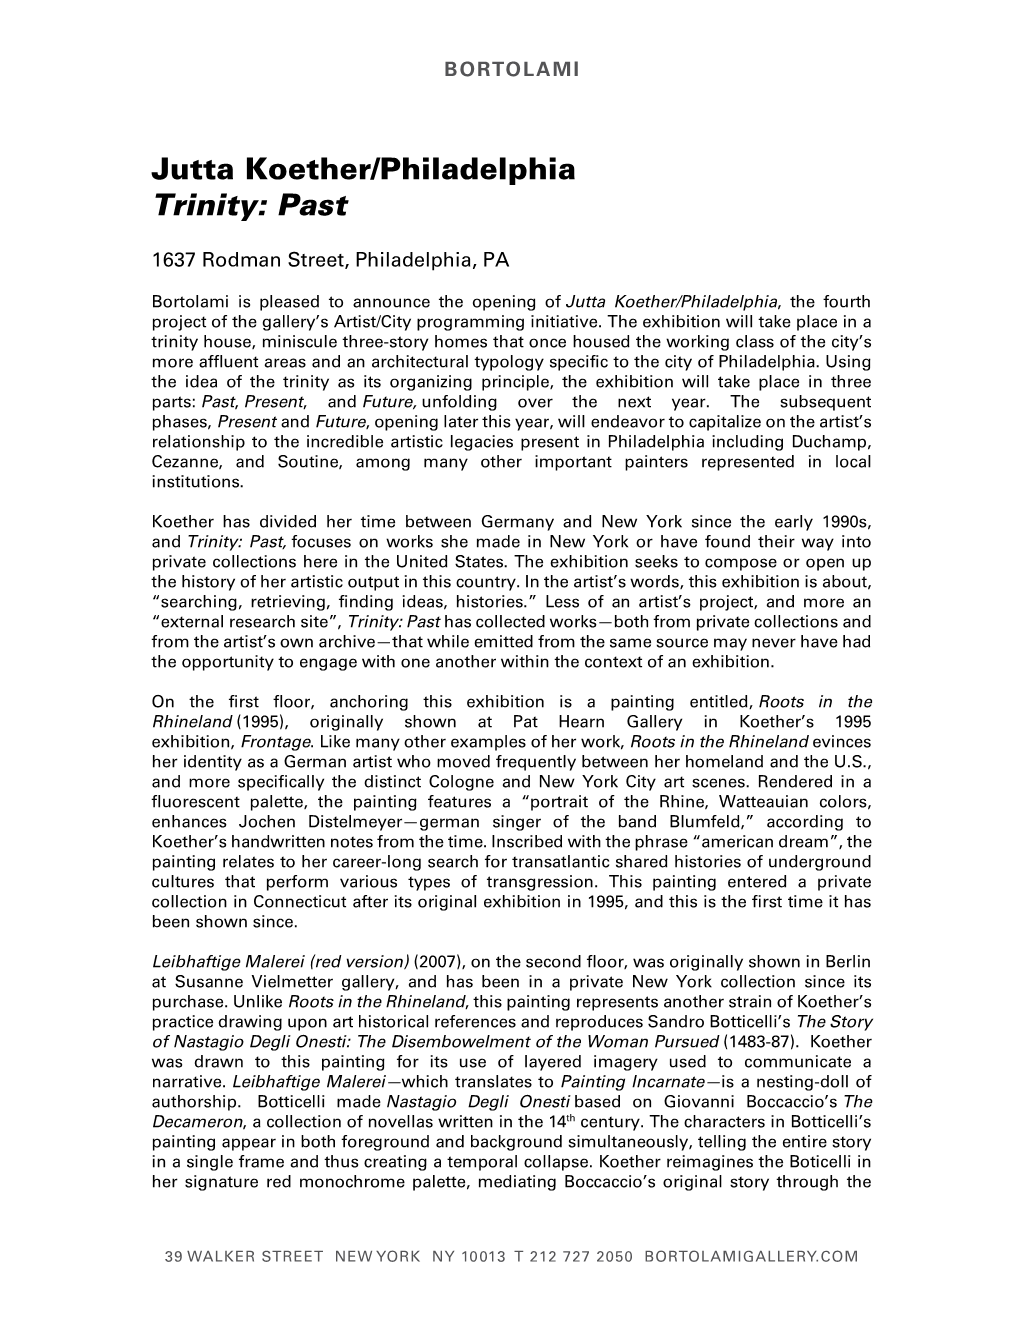 Jutta Koether/Philadelphia Trinity: Past